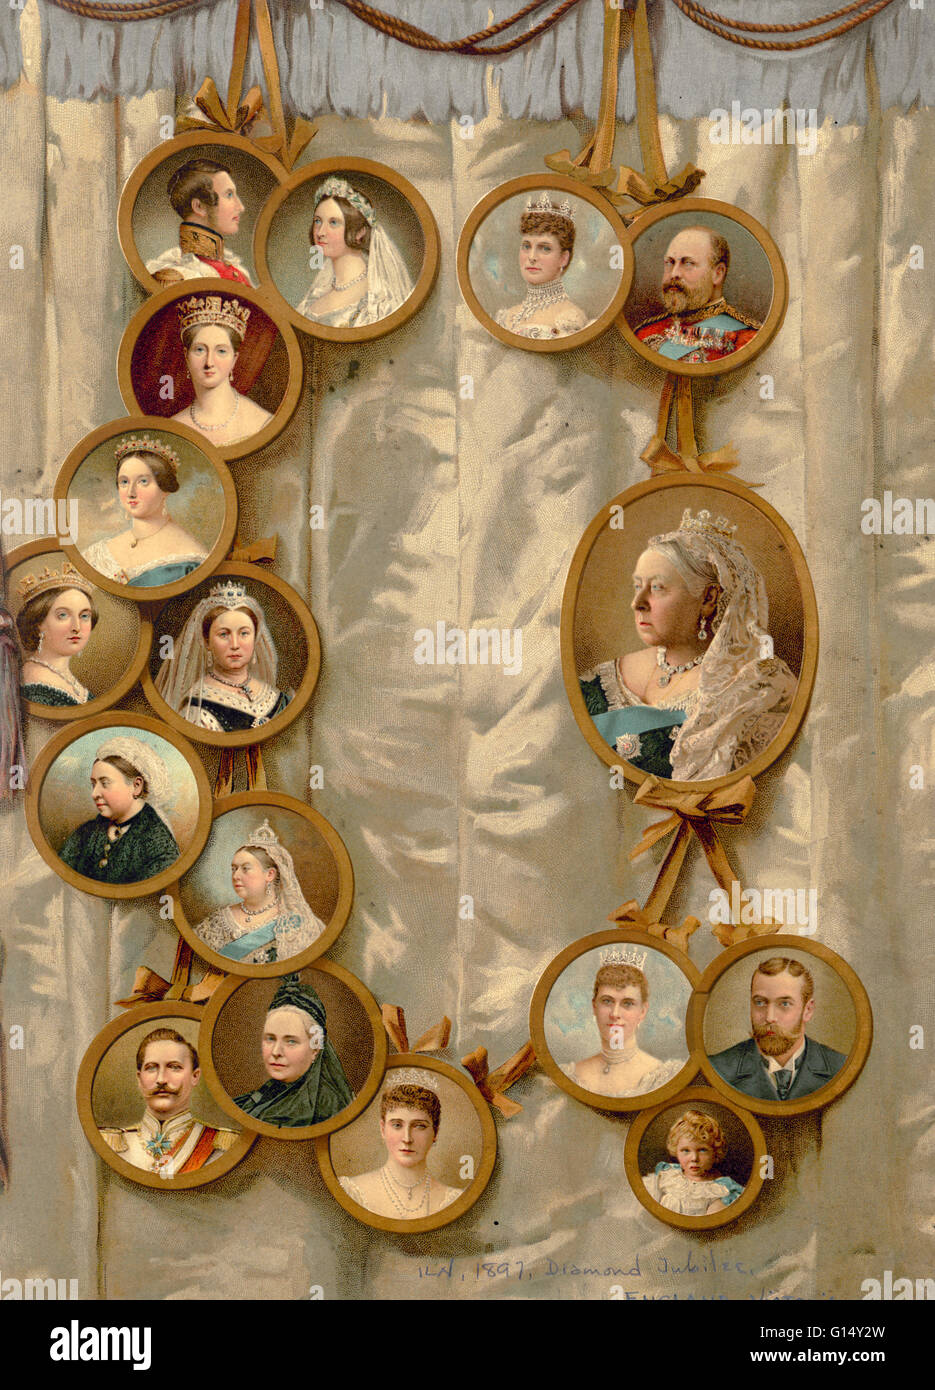 La reine Victoria et la famille royale en 1897. Un arbre généalogique de portraits commémorant Victoria. (Victoria, 24 mai 1819 - 22 janvier 1901) fut reine du Royaume-Uni de Grande-Bretagne et d'Irlande. Son règne est connu comme l'époque victorienne Banque D'Images